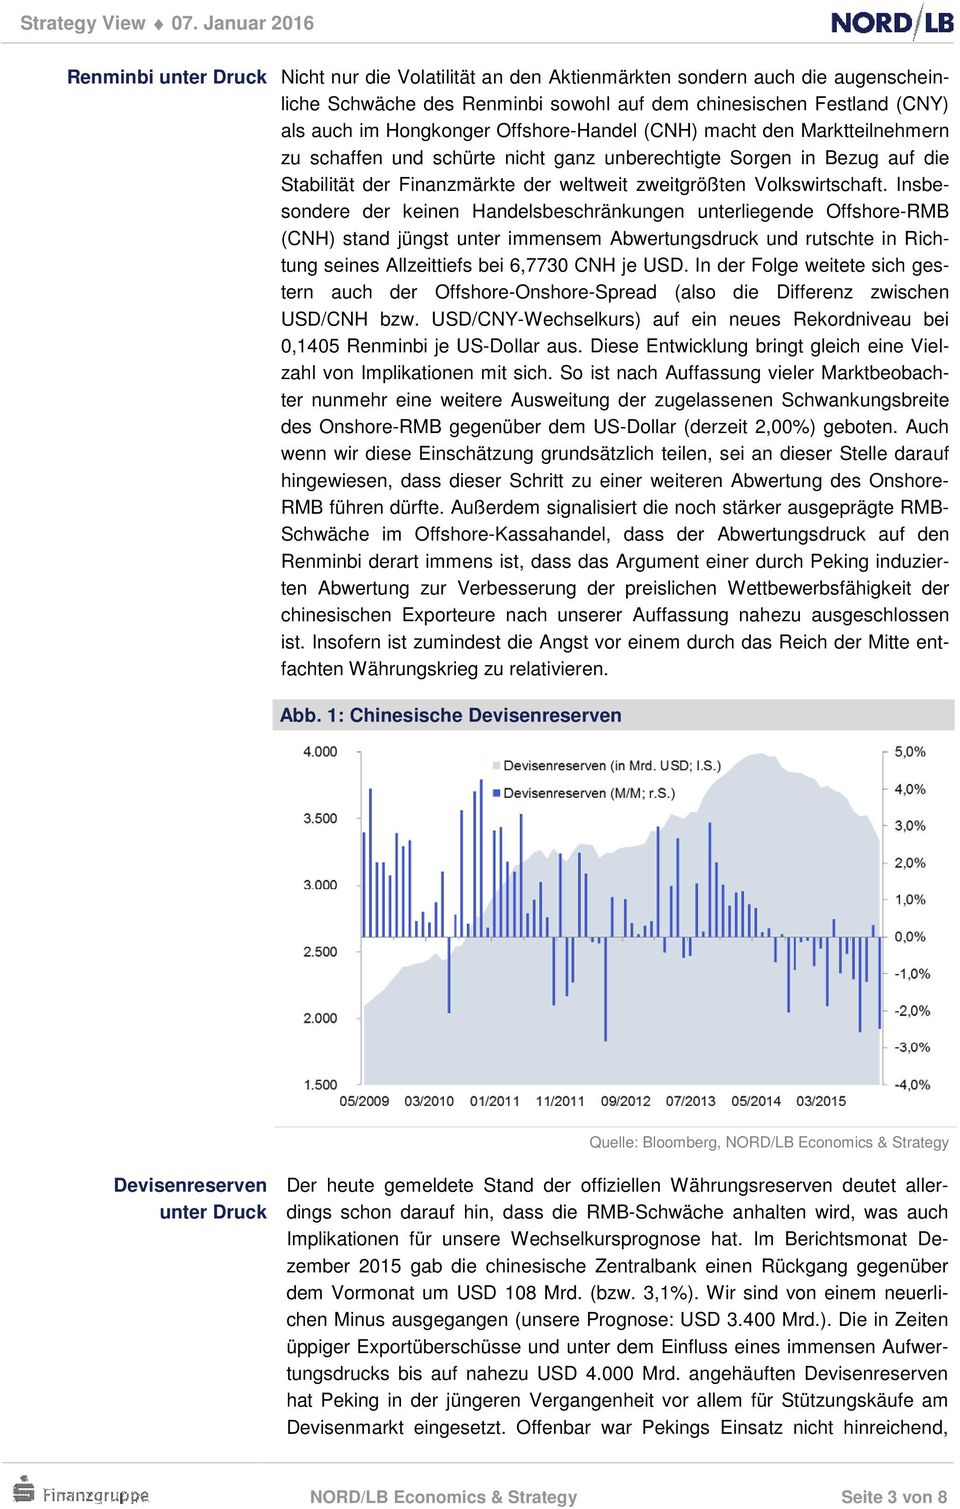 Insbesondere der keinen Handelsbeschränkungen unterliegende Offshore-RMB (CNH) stand jüngst unter immensem Abwertungsdruck und rutschte in Richtung seines Allzeittiefs bei 6,7730 CNH je USD.